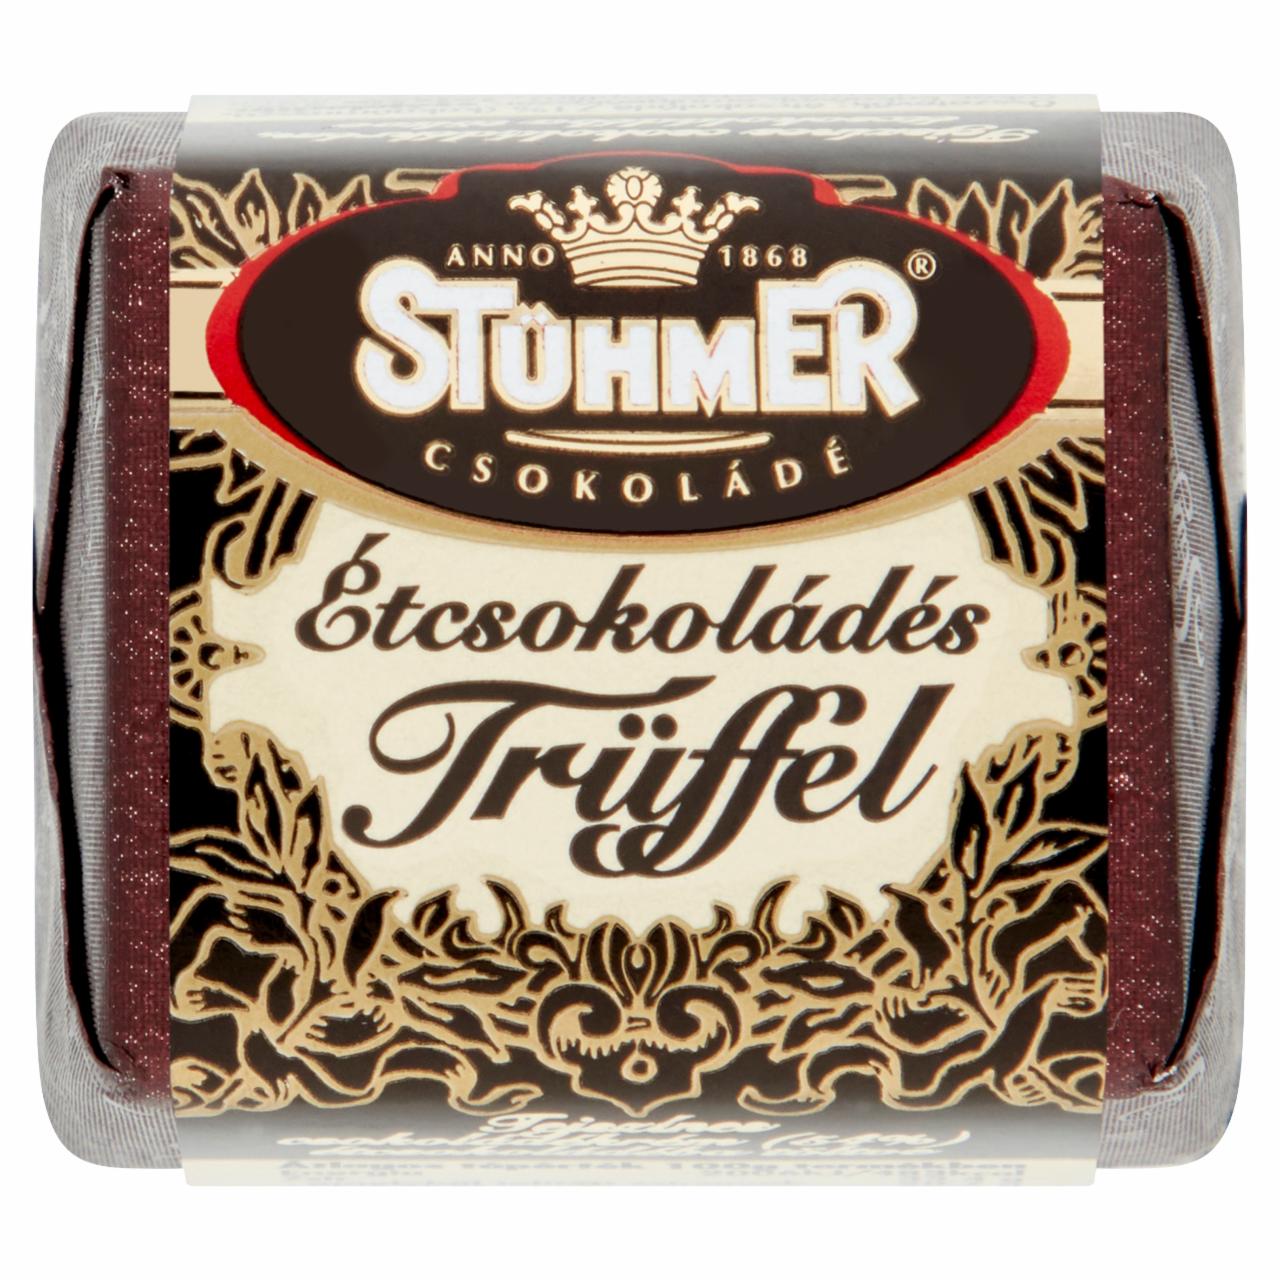 Képek - Stühmer Étcsokoládés Trüffel tejszínes csokoládékrém, étcsokoládéba töltve 16 g